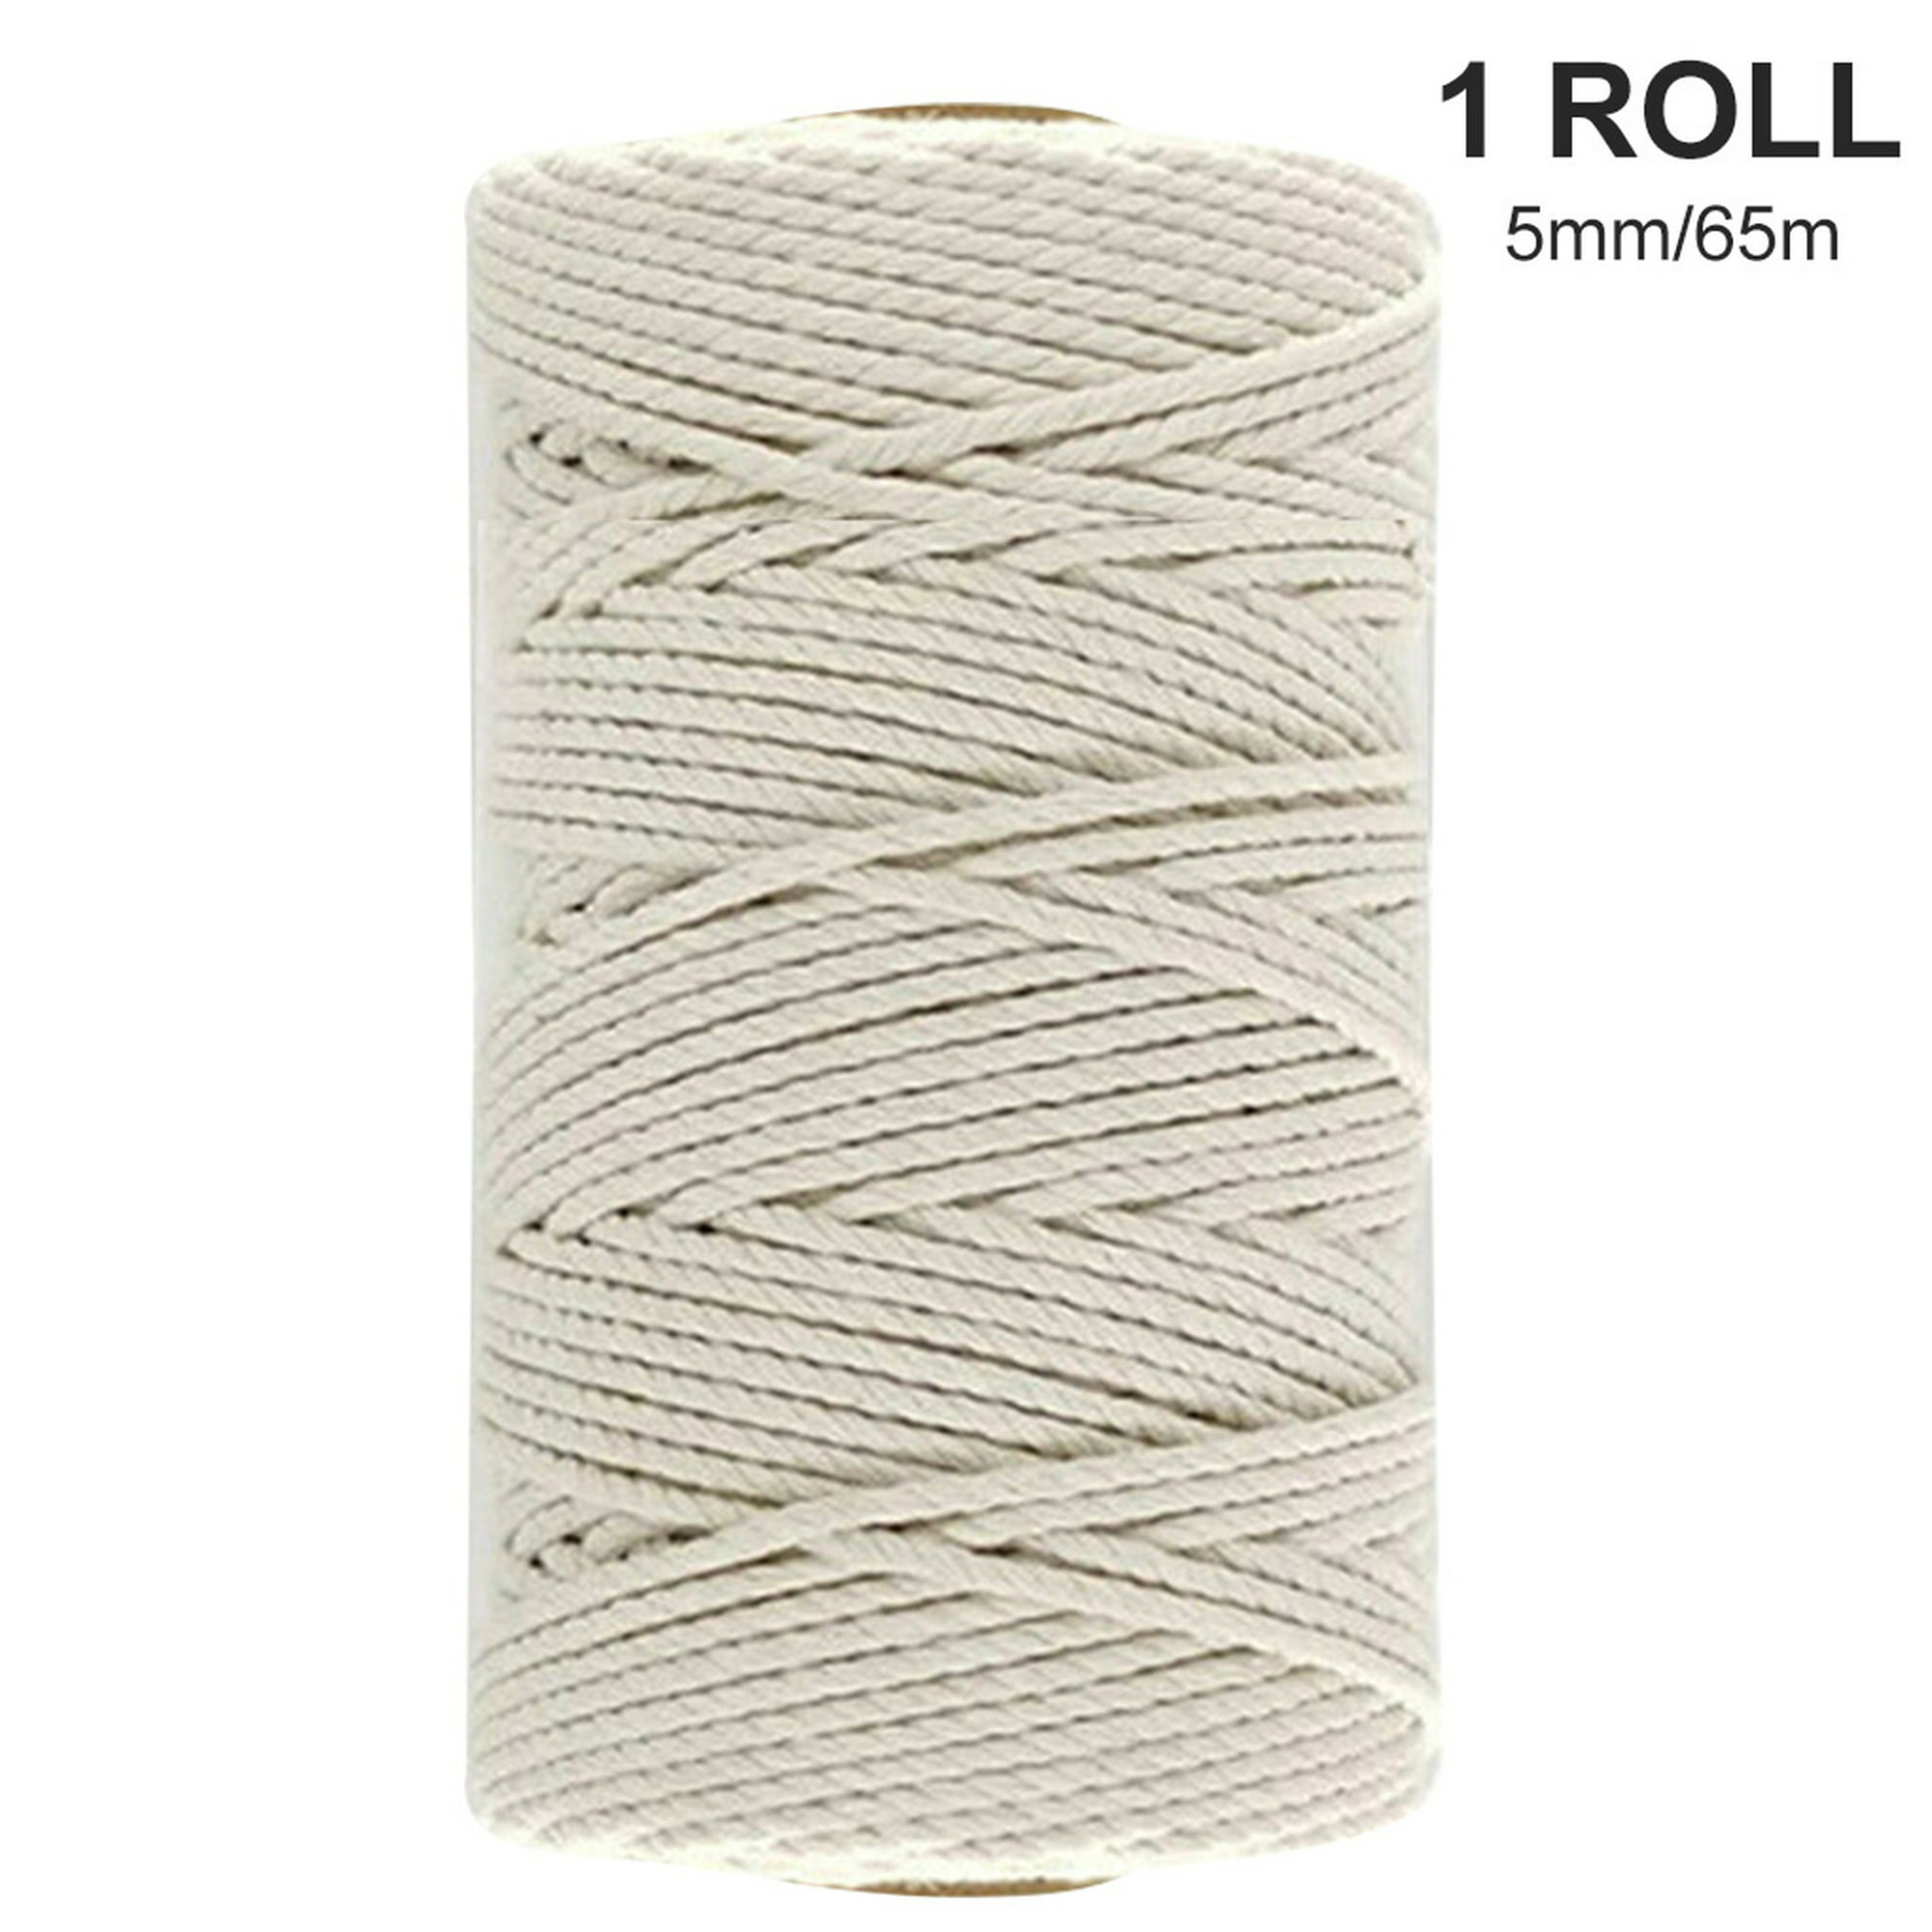  Cuerdas de algodón torcidas de 5 yardas de 0.394 in para  decoración de manualidades, cuerda de algodón para bolsa, cinturón,  accesorios de costura, cuerdas de algodón trenzadas para manualidades,  cuerda de